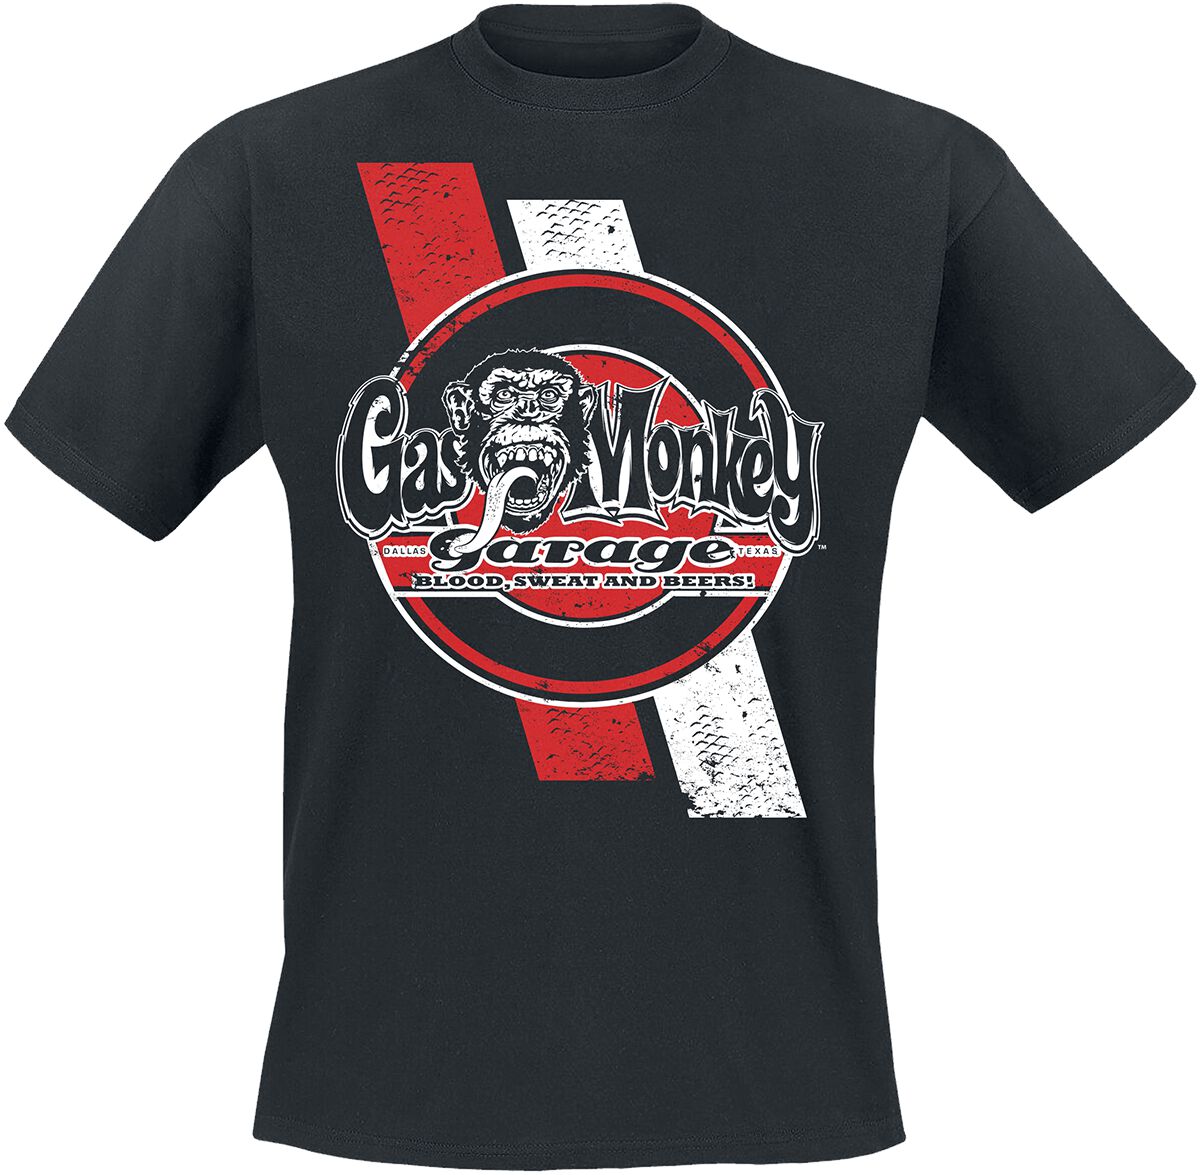 Gas Monkey Garage T-Shirt - Red And White Stripes - S bis XXL - für Männer - Größe S - schwarz  - Lizenzierter Fanartikel